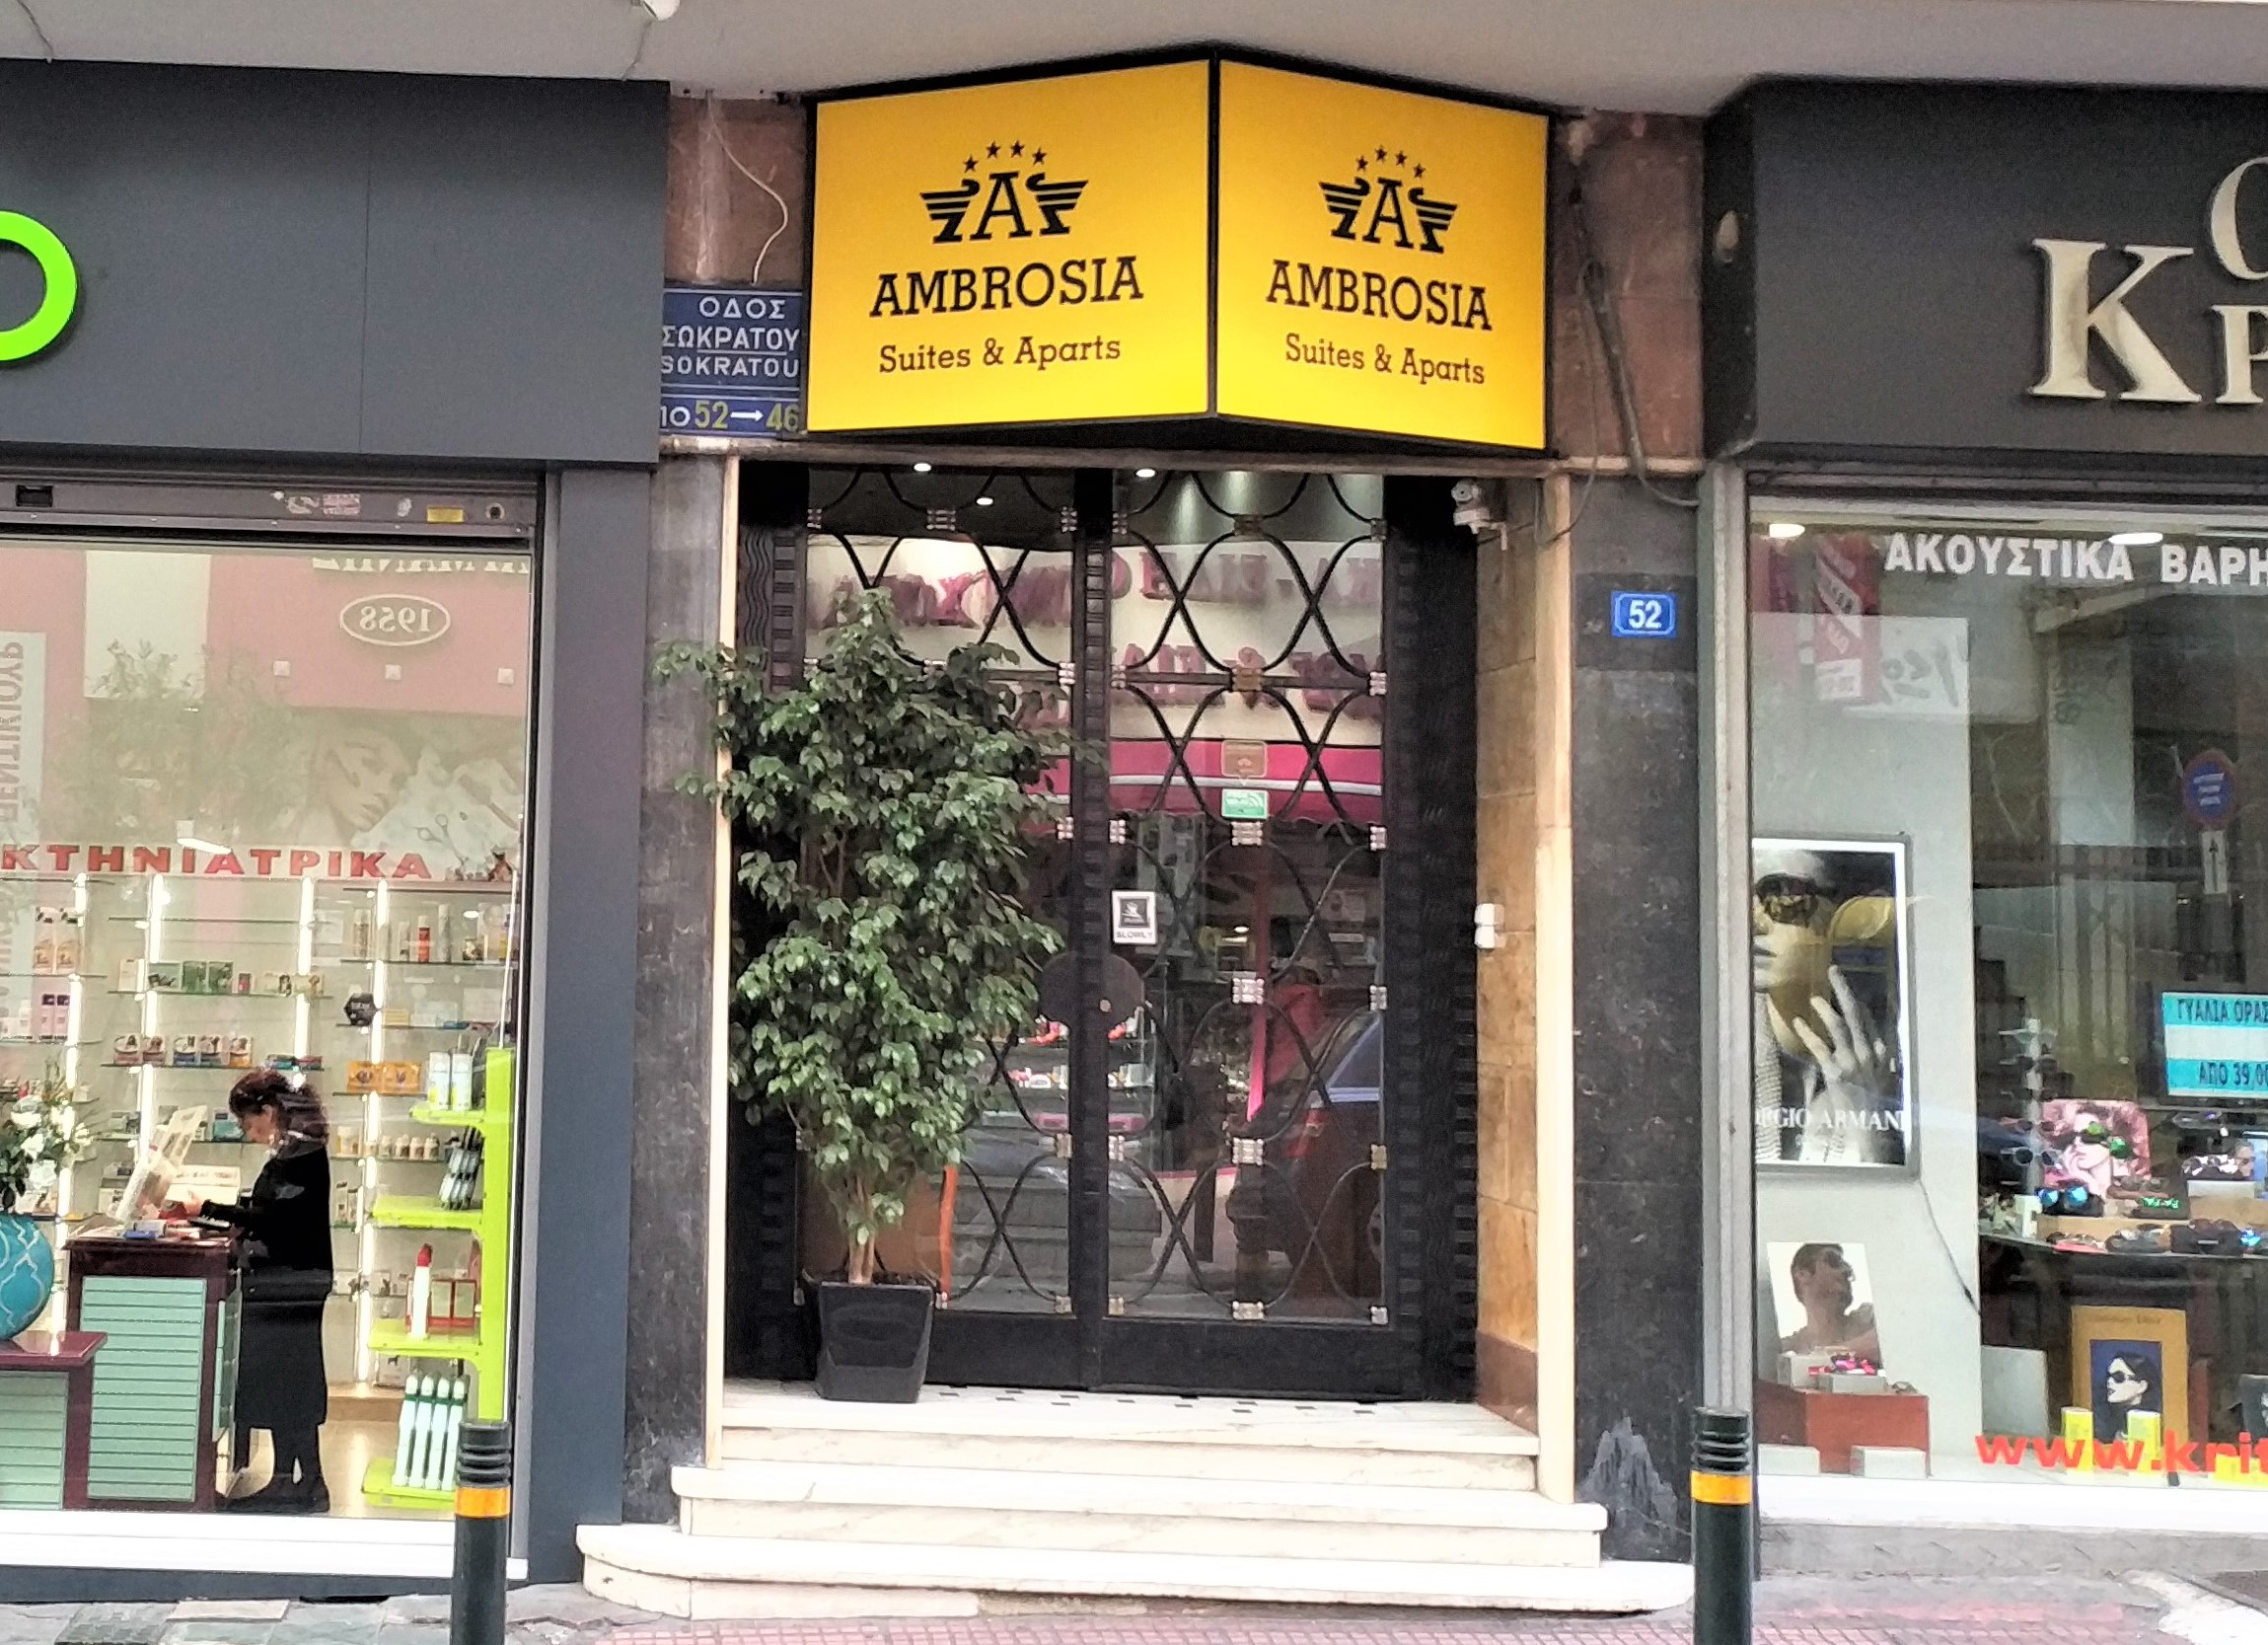 Ambrosia Suites & Aparts